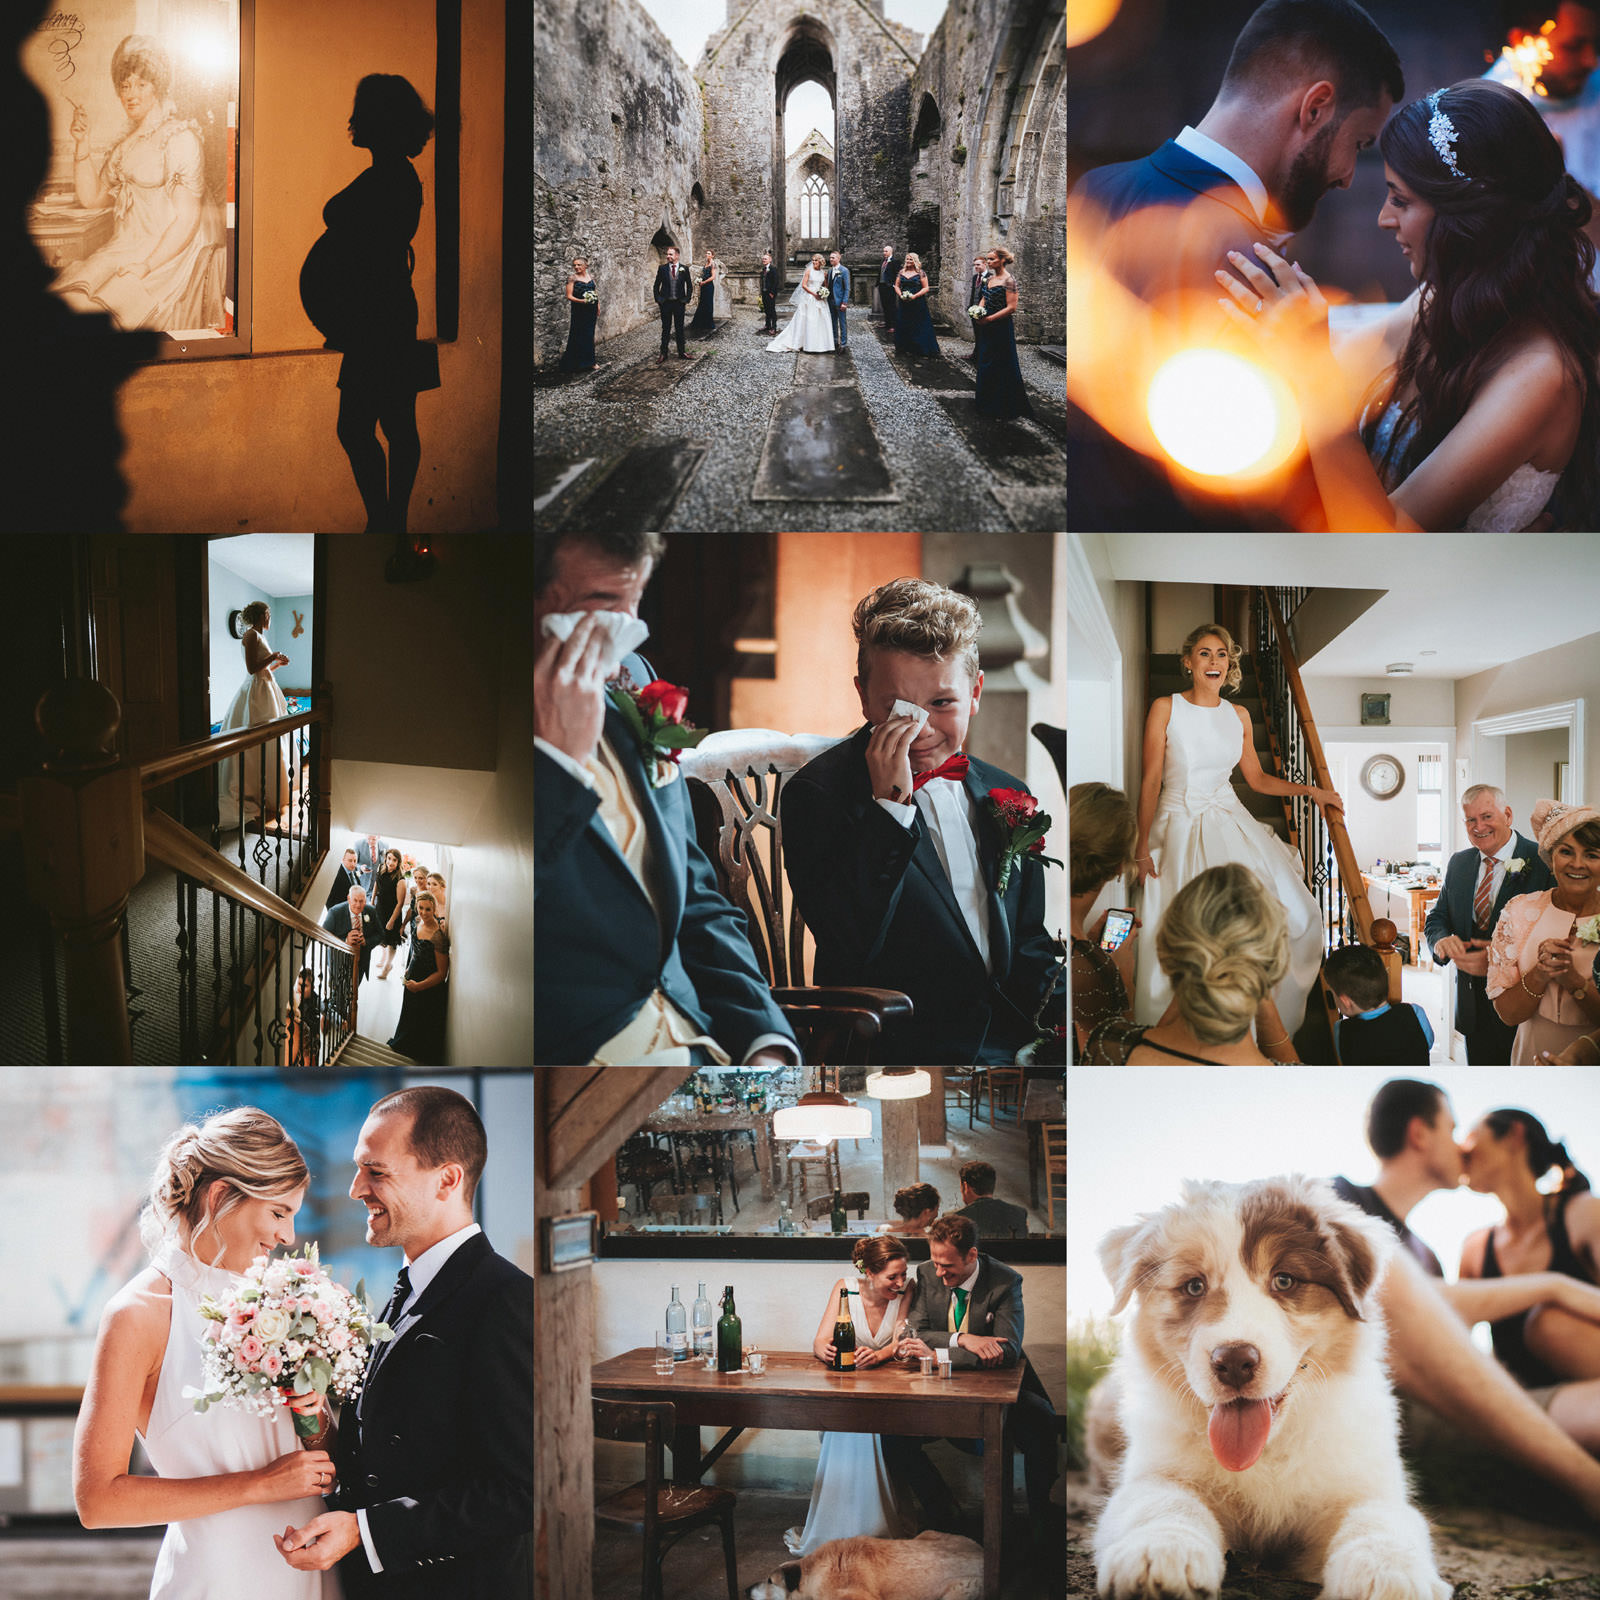 Collage Brautrausch BestNine 2021 auf Instagram - Babybauch, Hochzeit in Irland, Hochzeit in Frankfurt, Hochzeit in Kronberg, Hochzeit in Würzburg, Foto mit Hund - Hochzeitsfotograf Deutschland